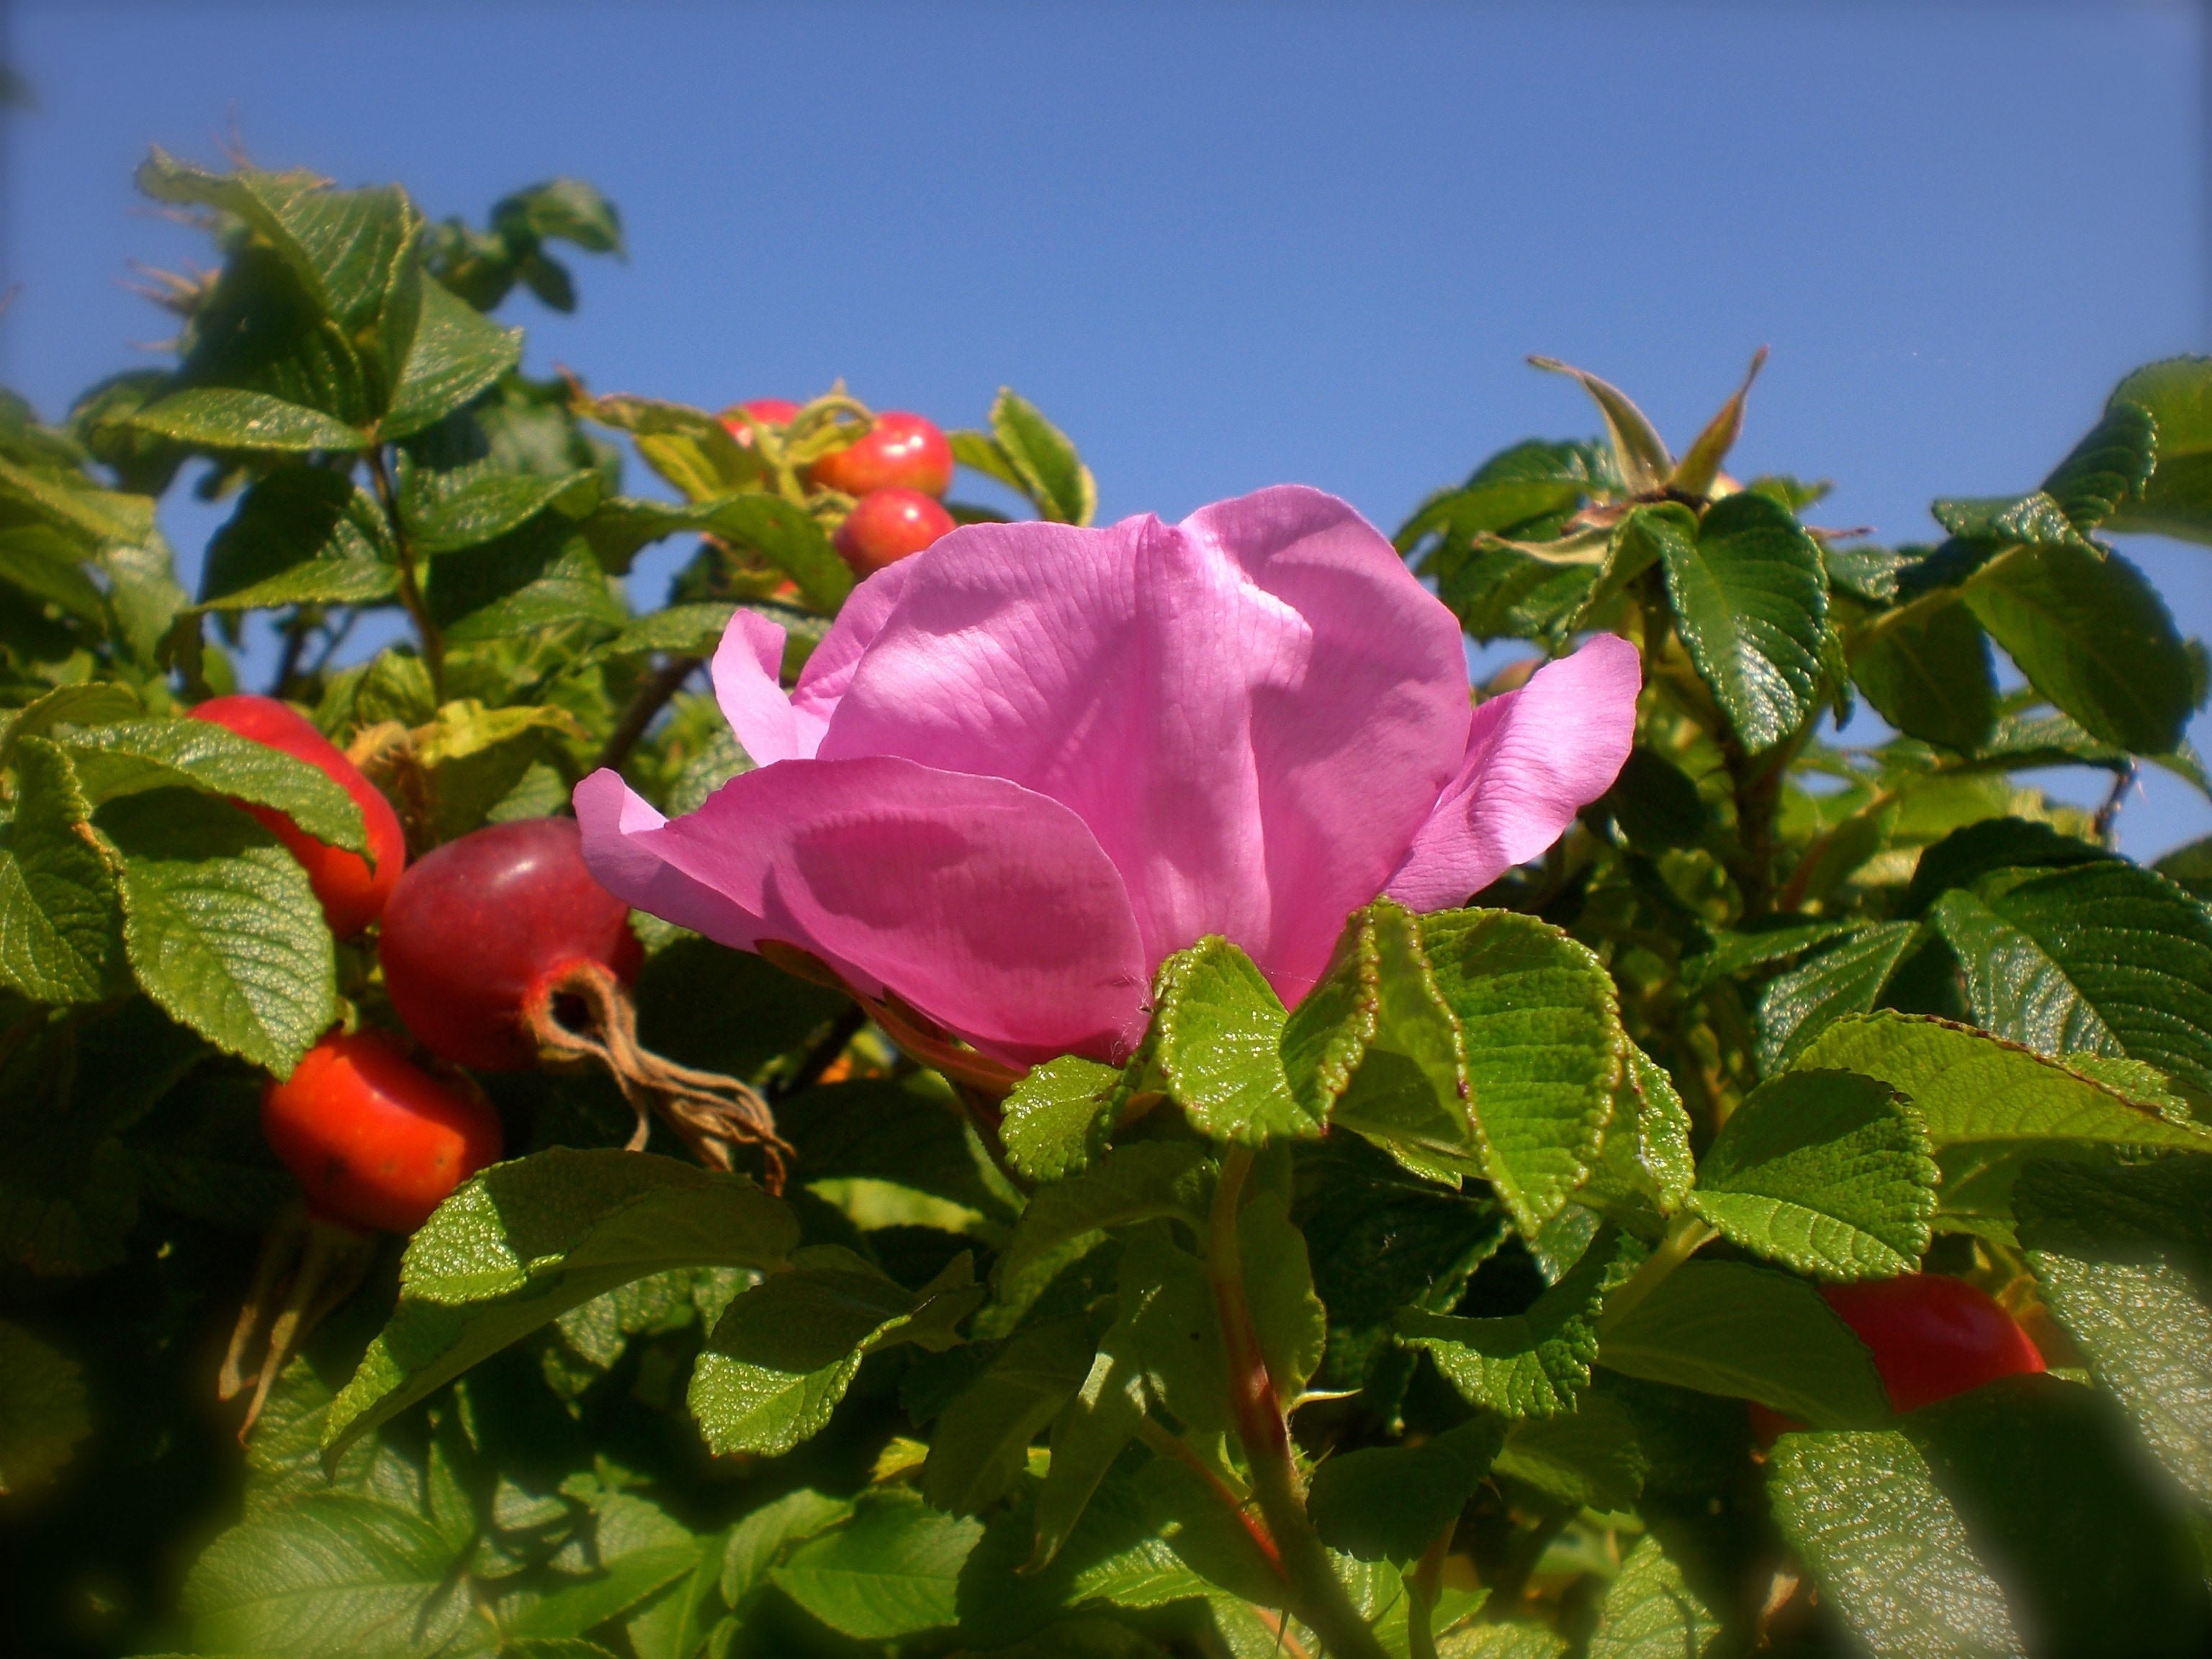 Rose Greenhouse, Rose Hip, Wild Rose, flower, leaf